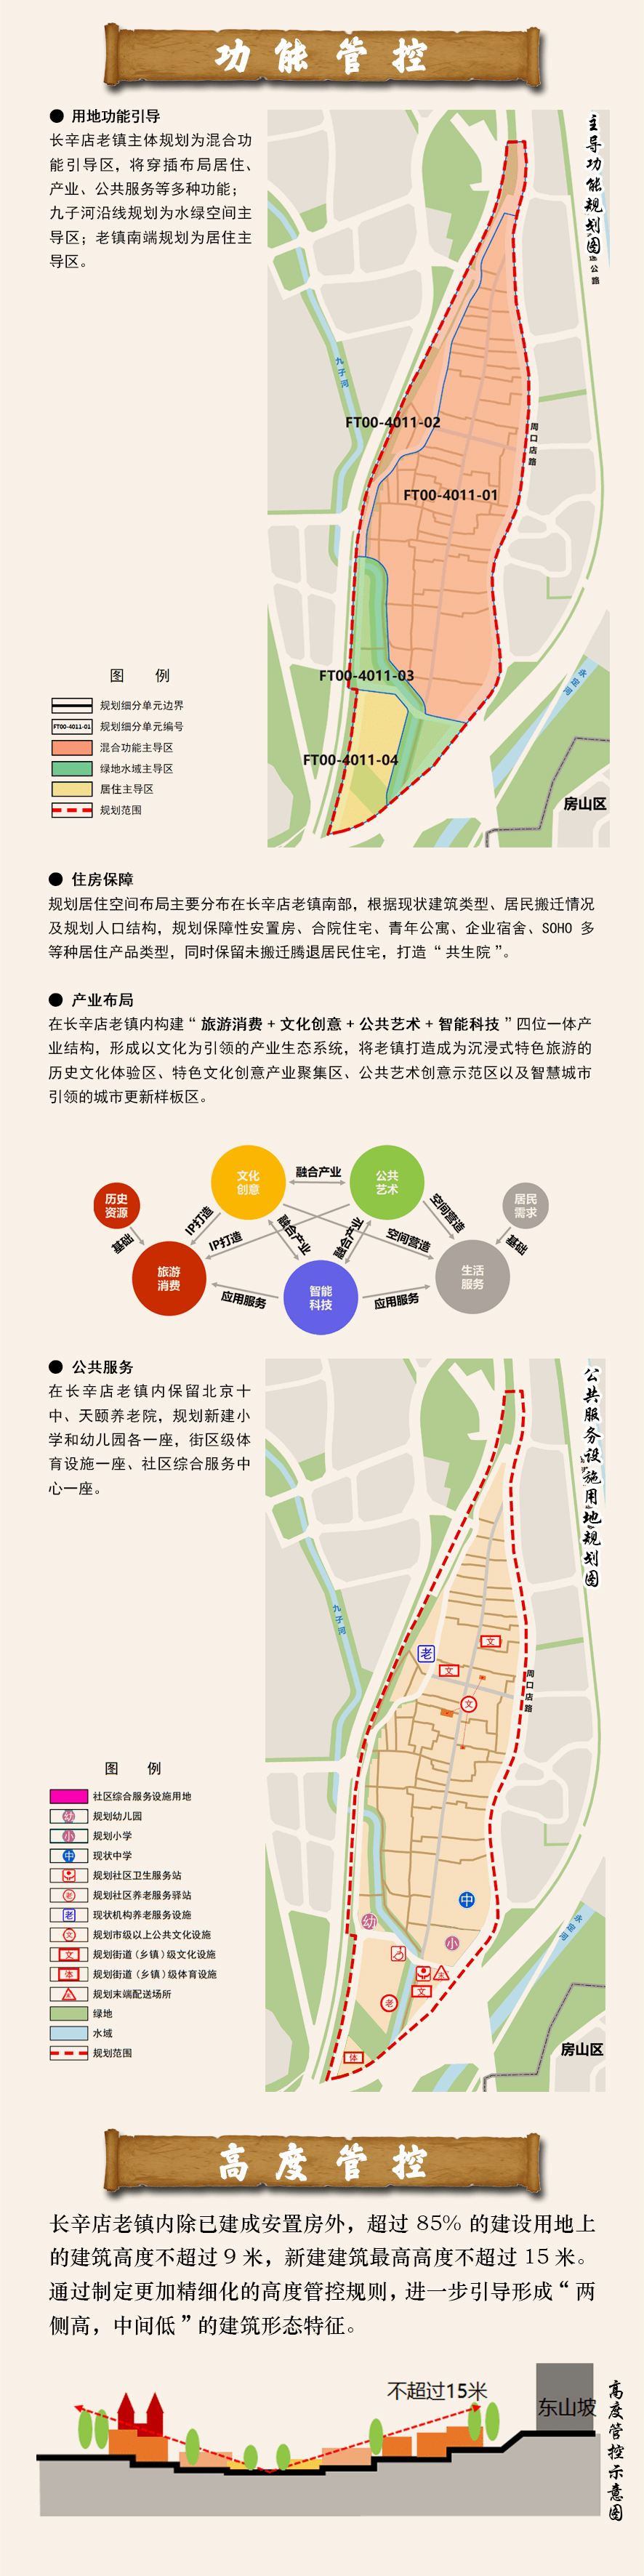 长辛店老镇如何更新 丰台区正式公示了!_北京_规划